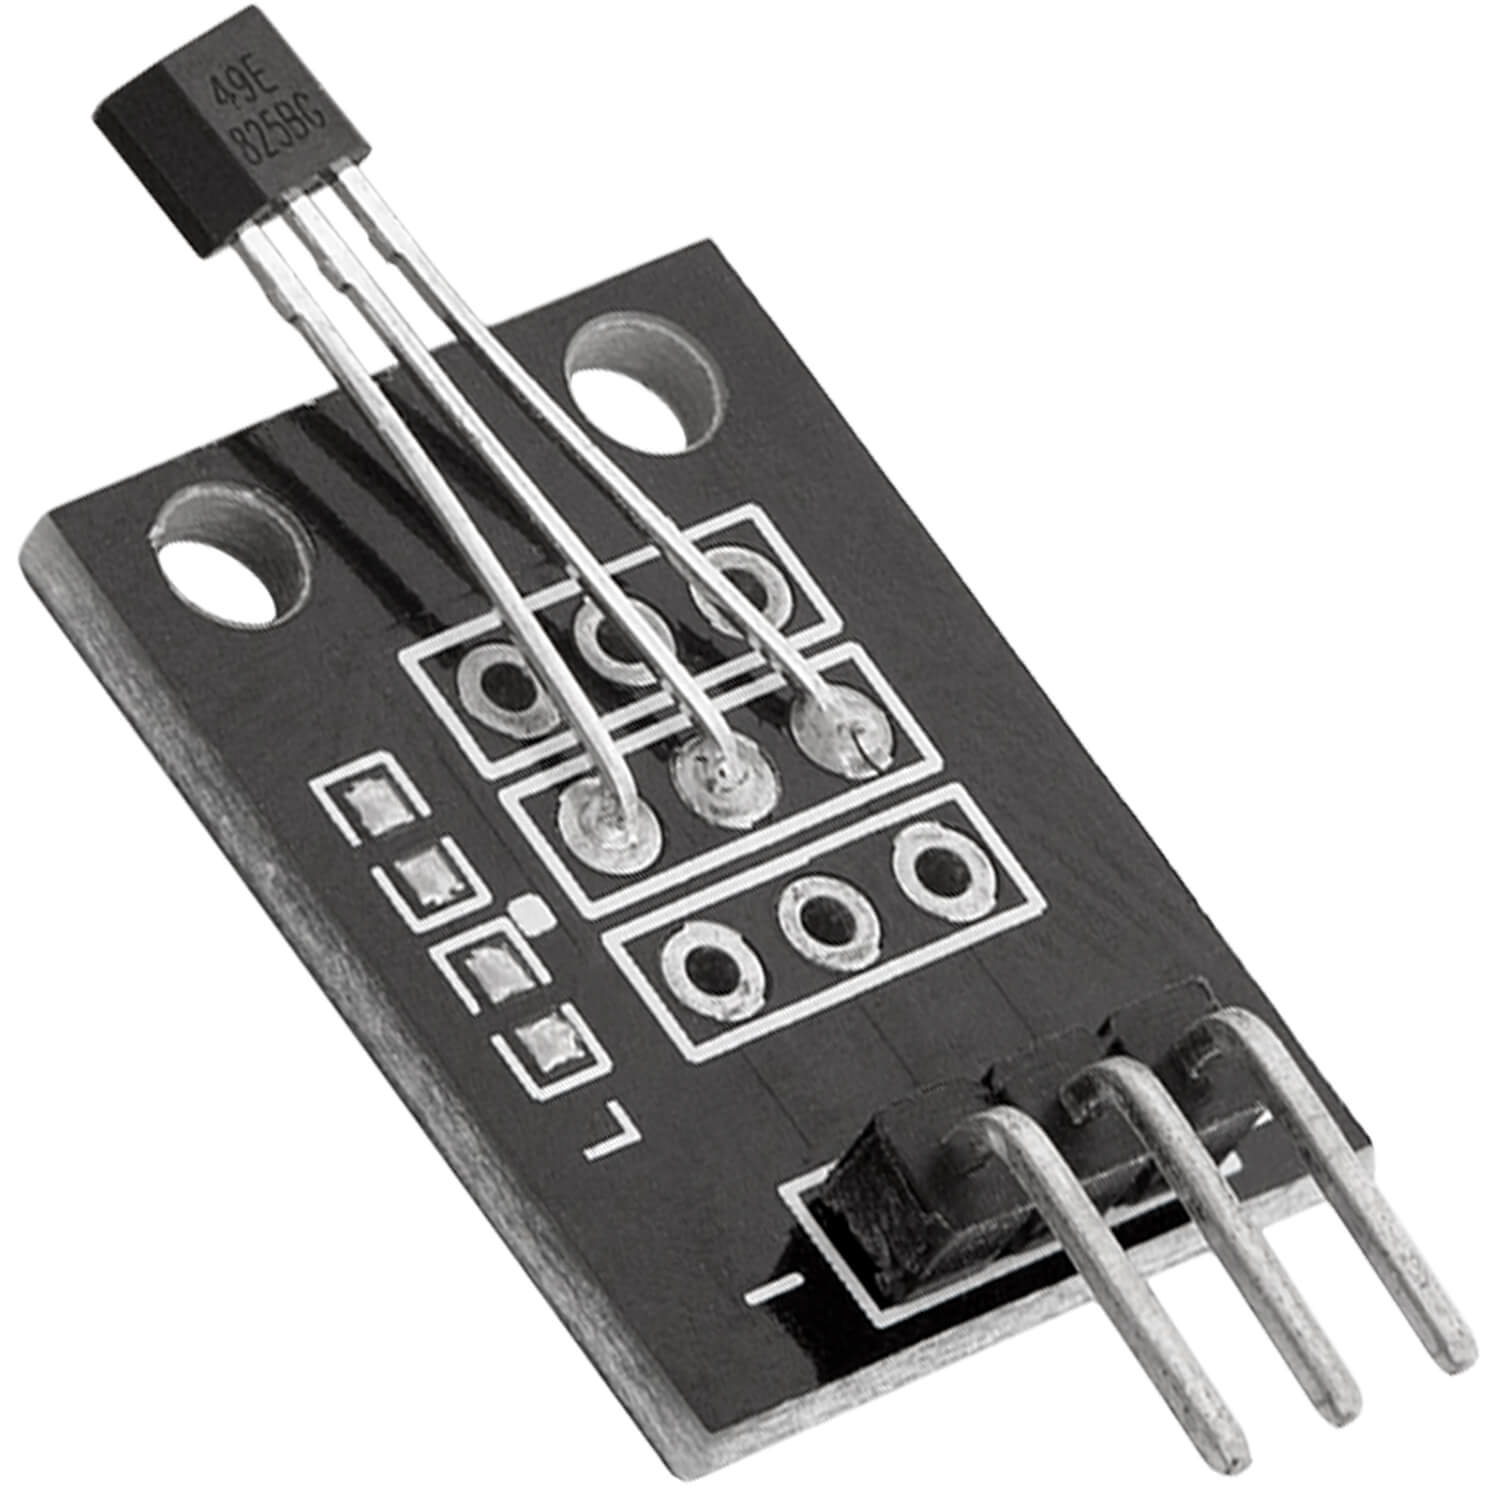 KY-035 magnetischer Hall Sensor Modul analog - AZ-Delivery